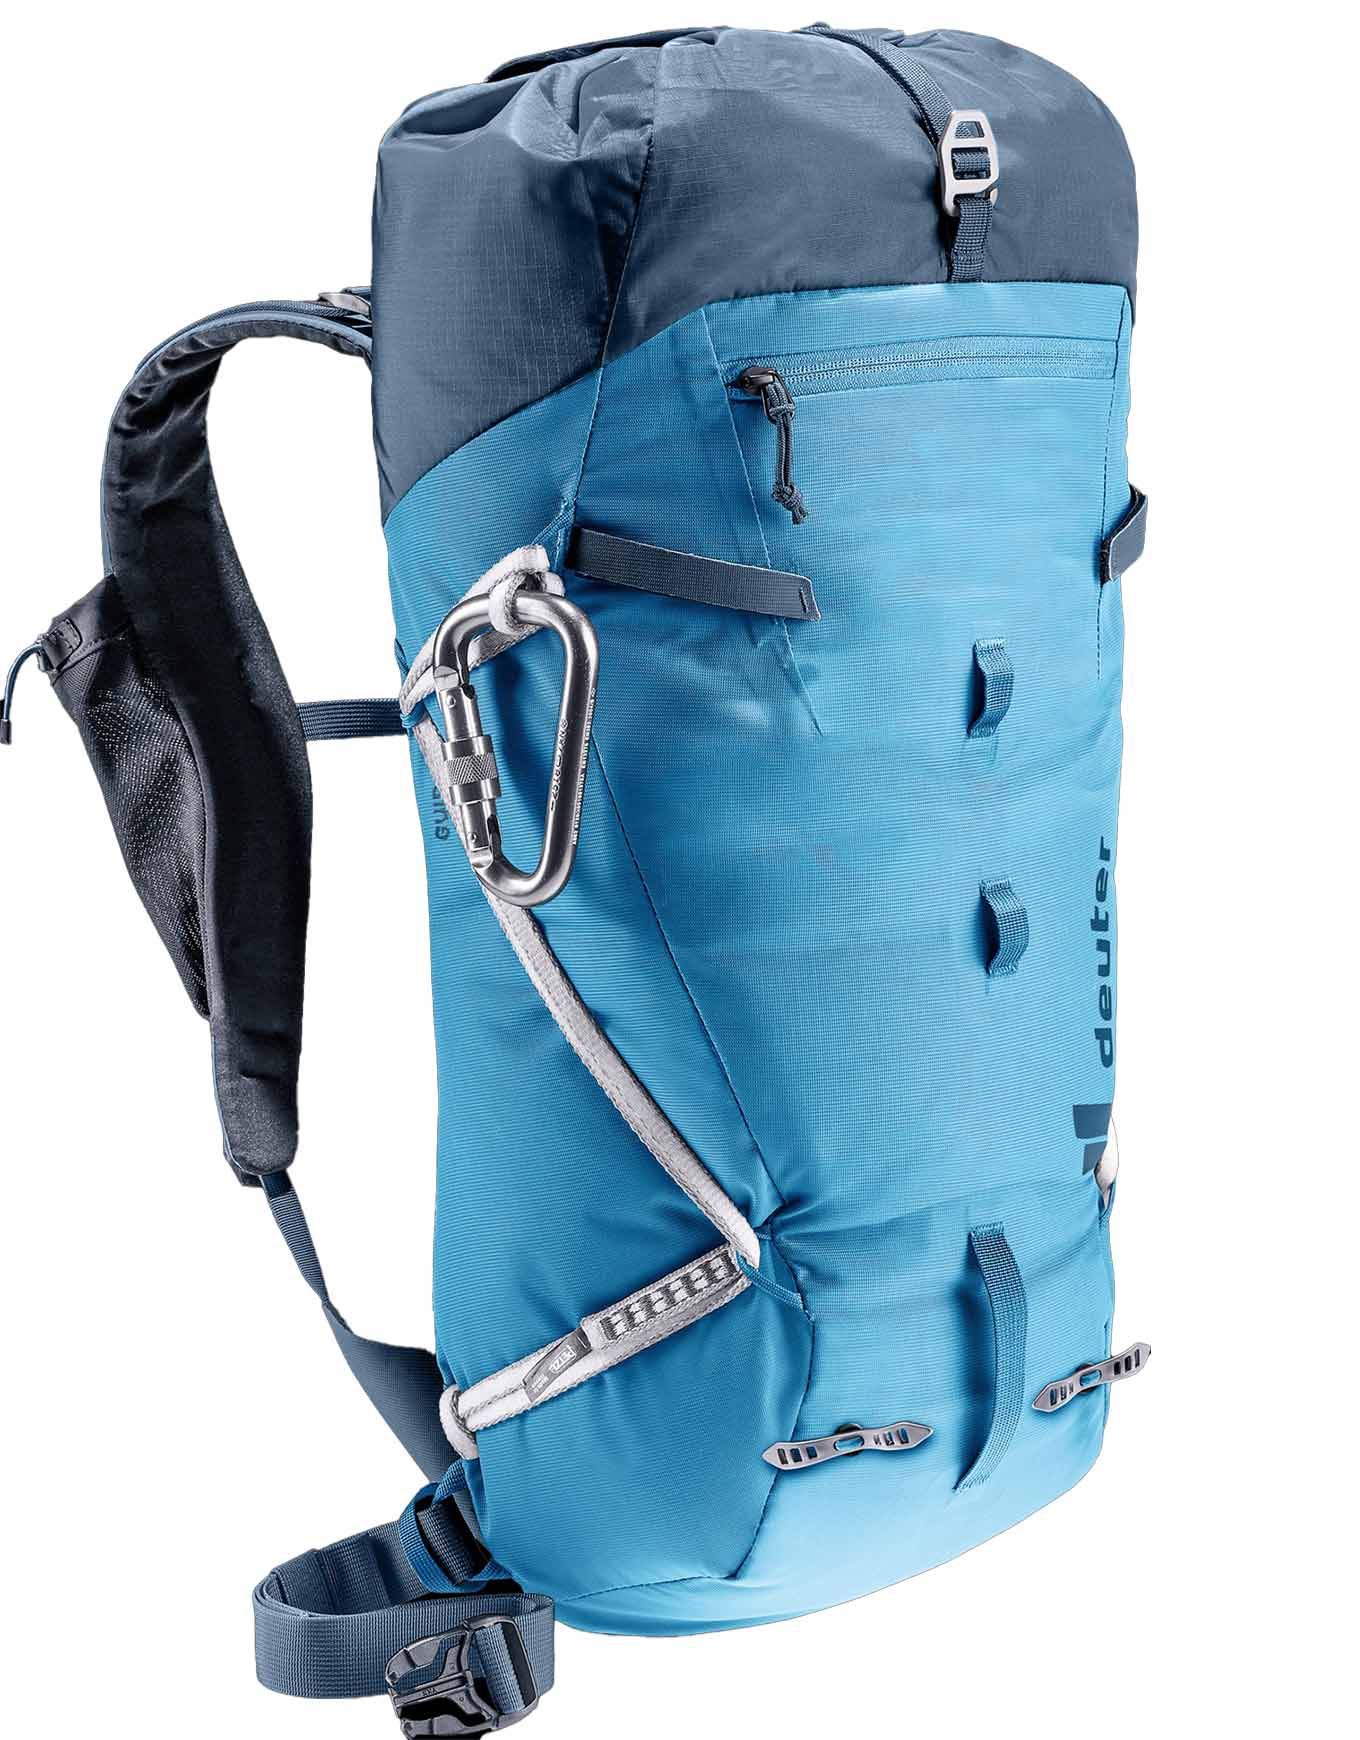 Deuter Guide 24 Alpine Climbing Backpack